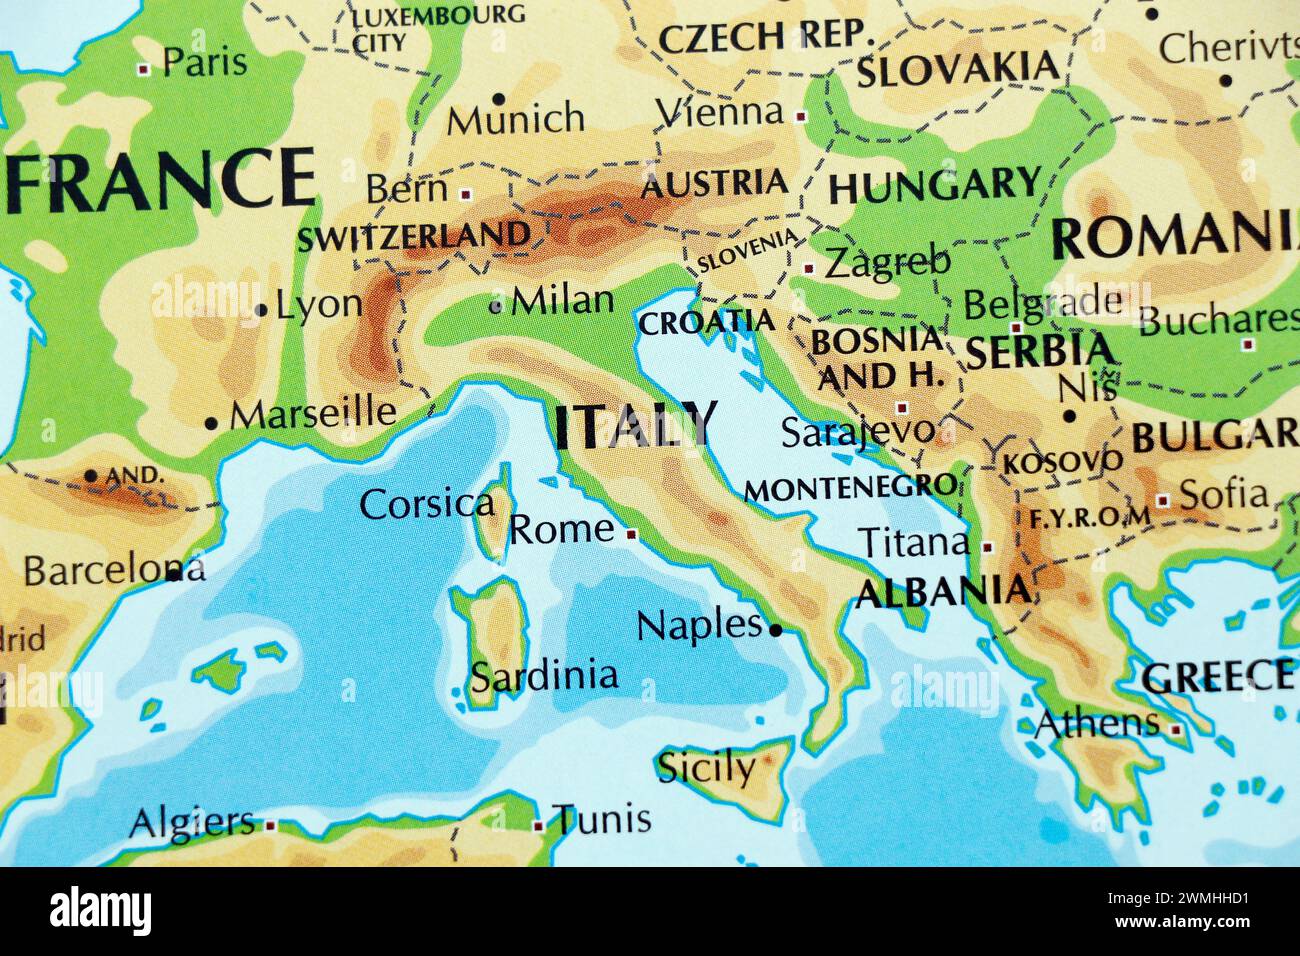 mapa del mundo de europa, italia, austria, hungría, suiza de cerca Foto de stock